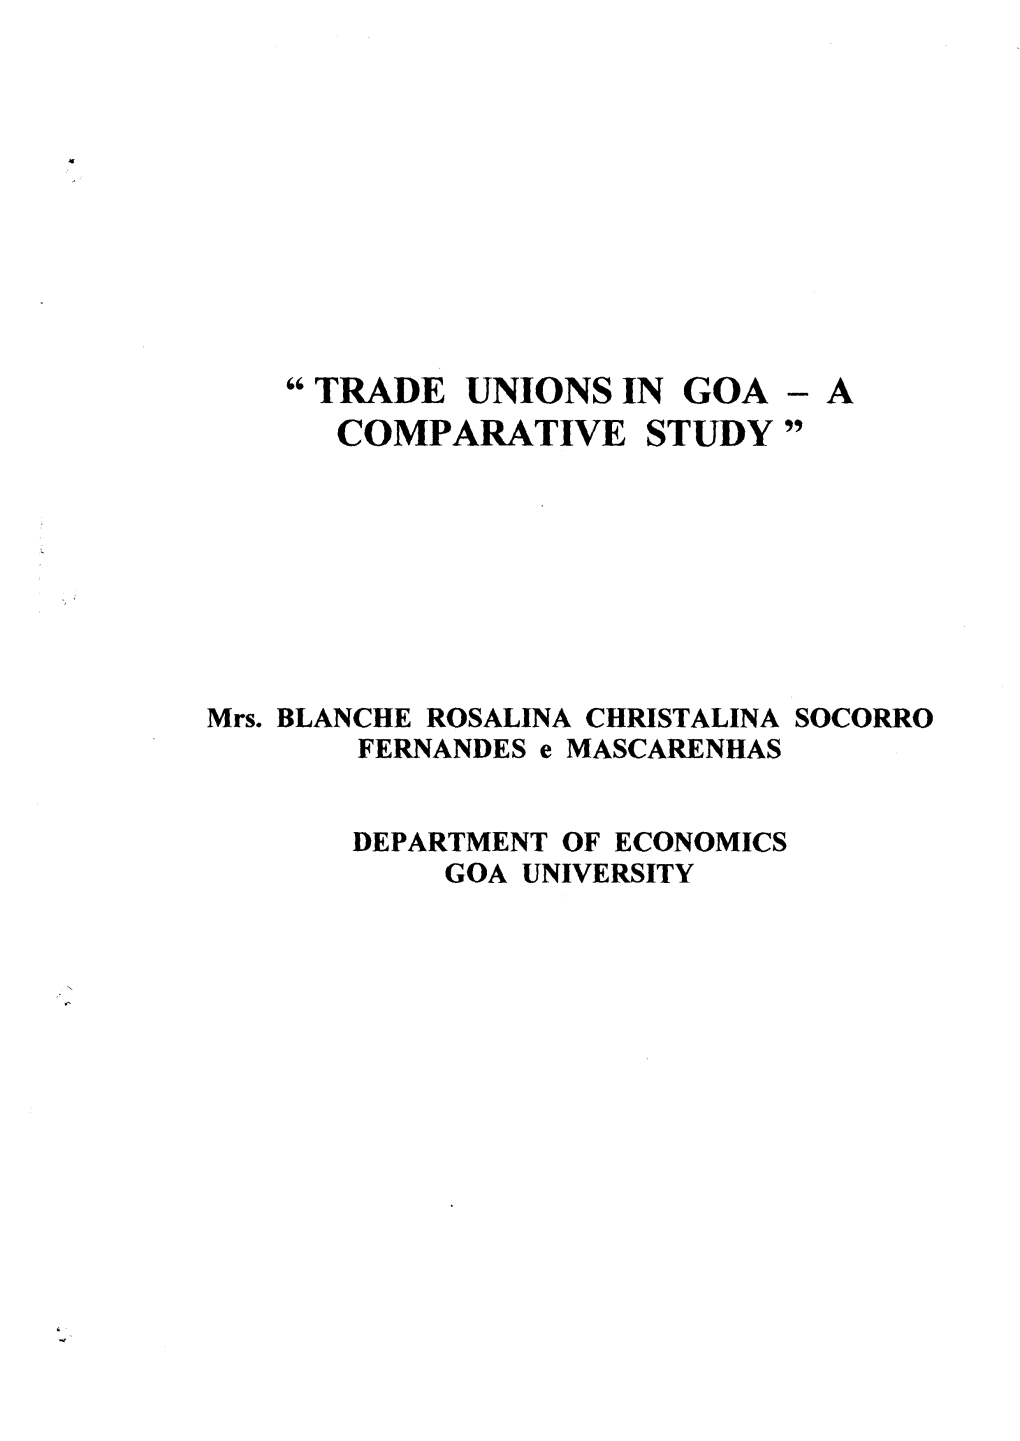 " Trade Unions in Goa - a Comparative Study "